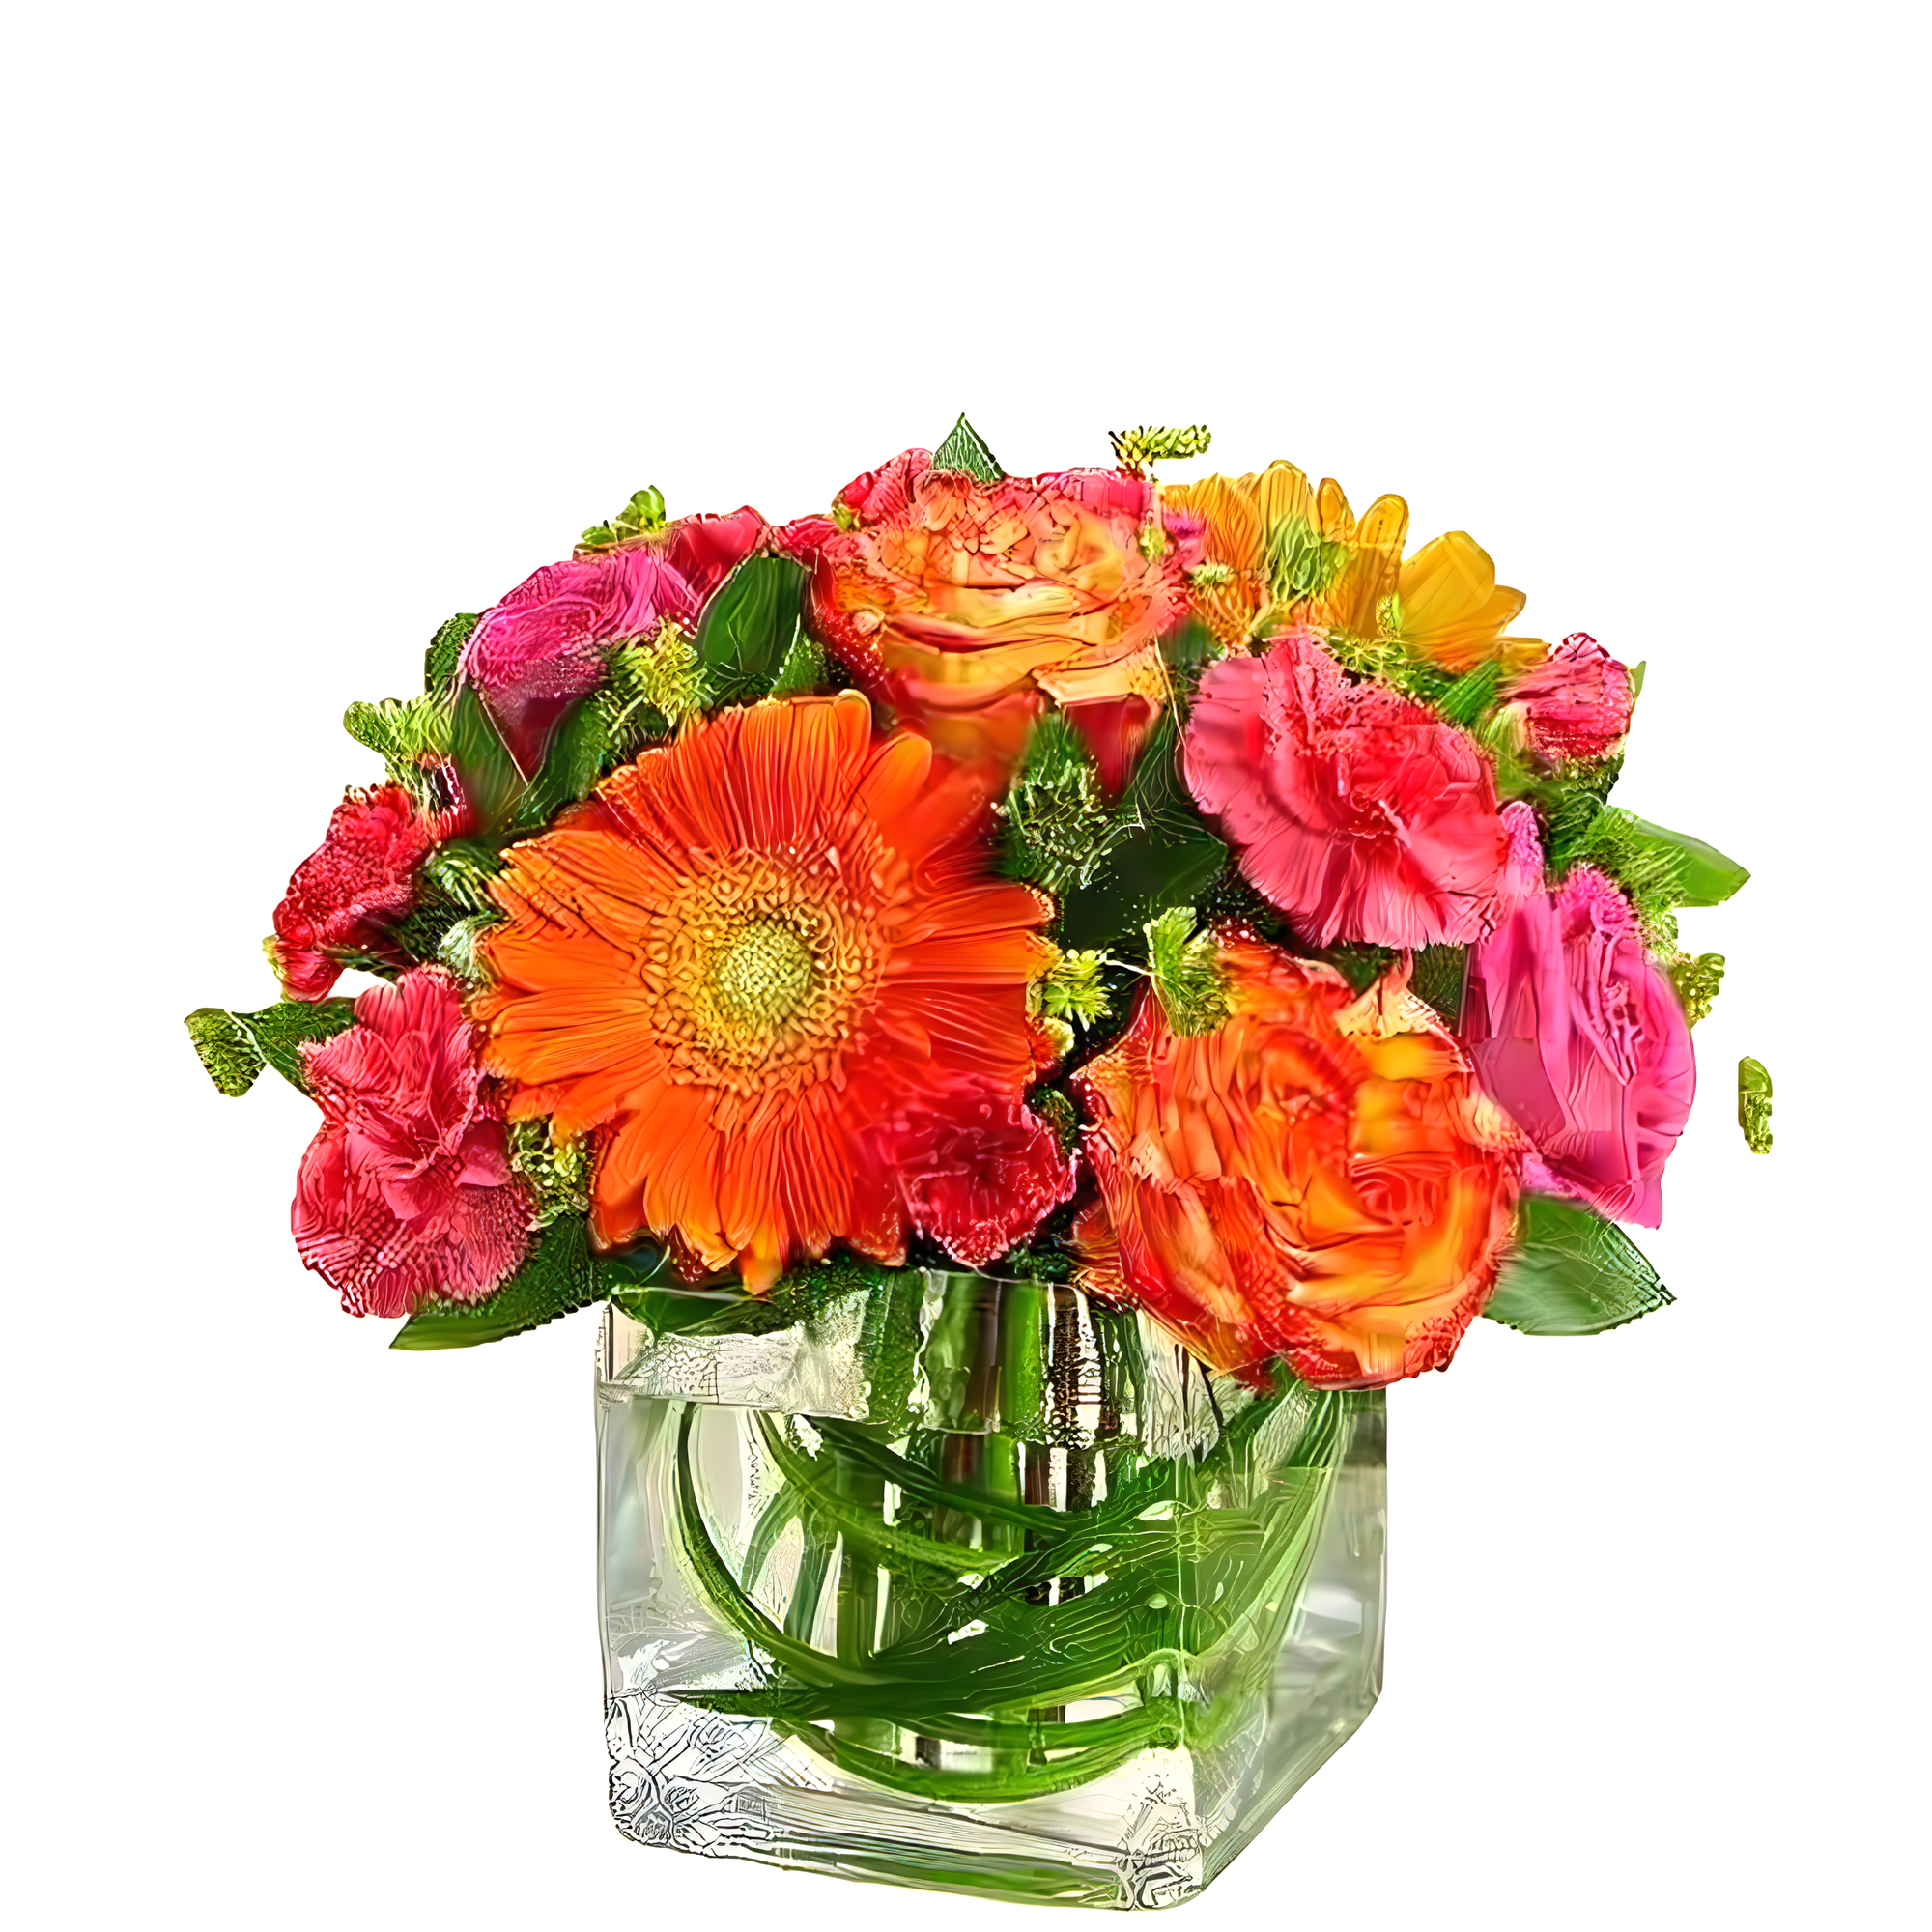 Manhattan Flower Delivery - Sunset Passion - Birthdays